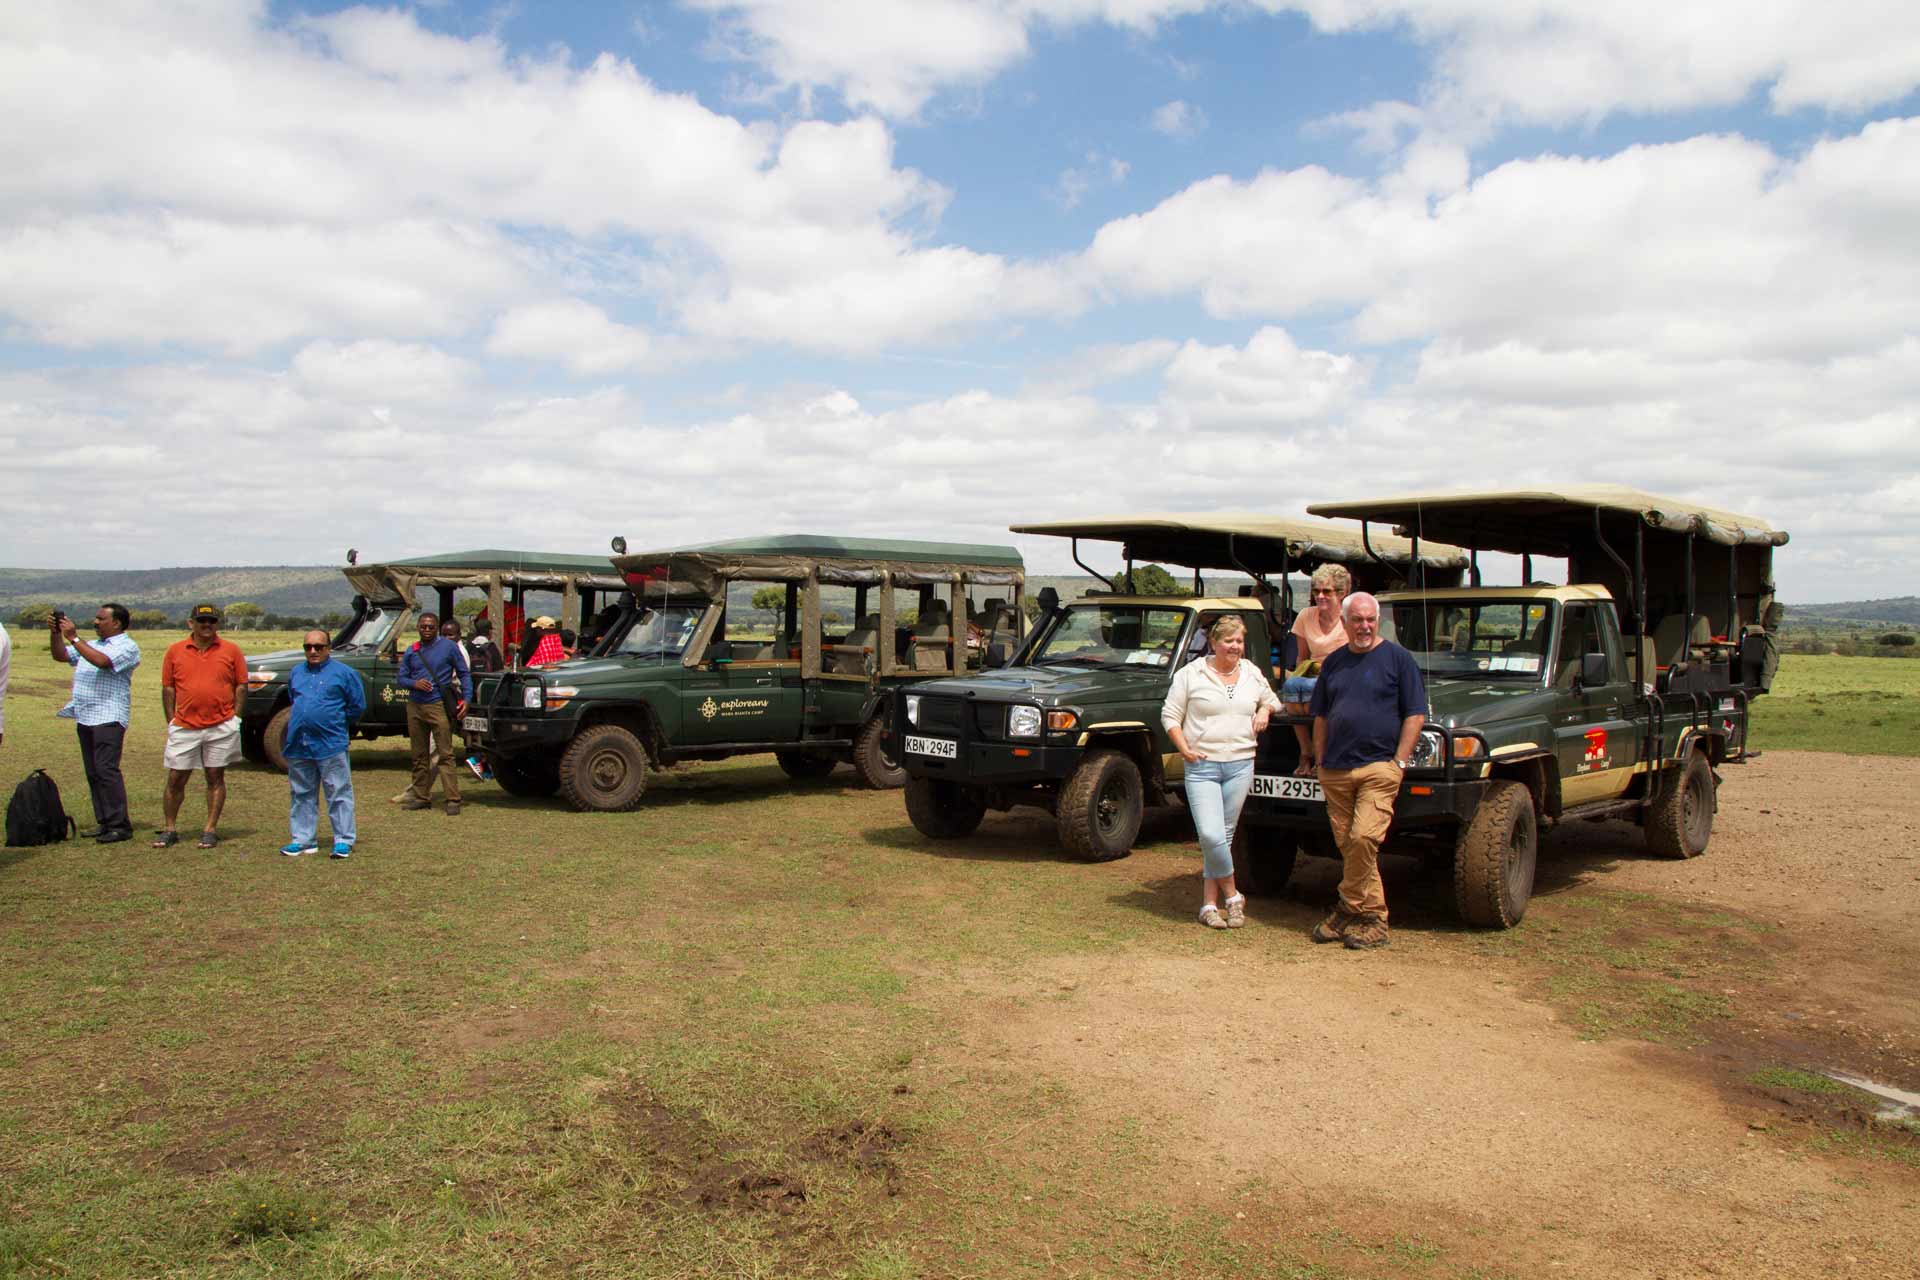 People waiting by safari vehicles at the airstrip, Masai Mara National Reserve, Kenya